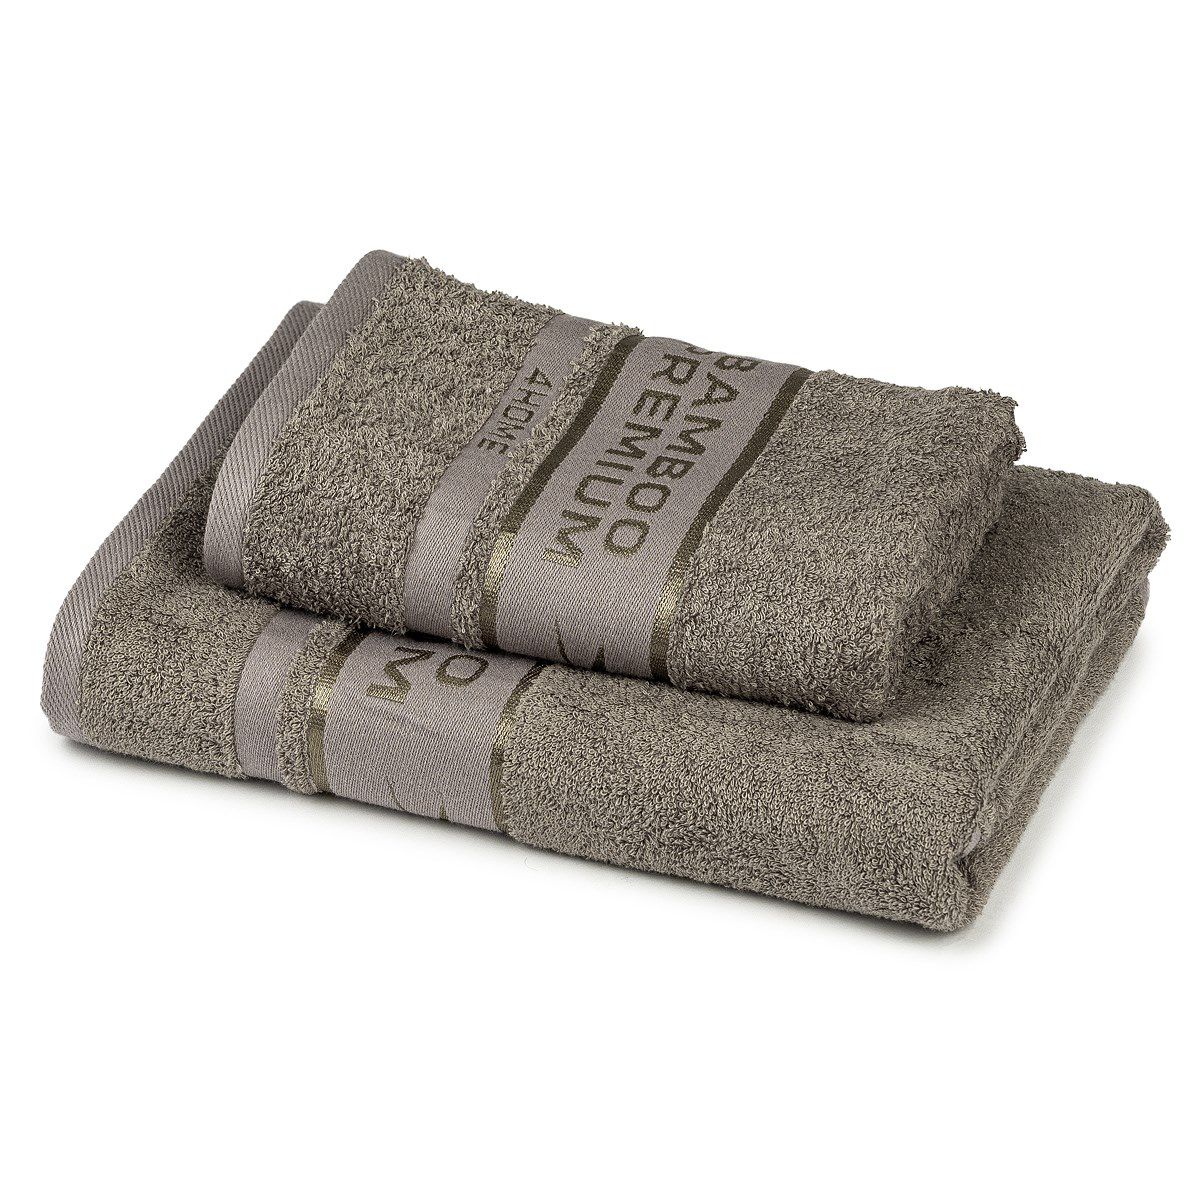 4Home Sada Bamboo Premium osuška a ručník šedá, 70 x 140 cm, 50 x 100 cm - 4home.cz